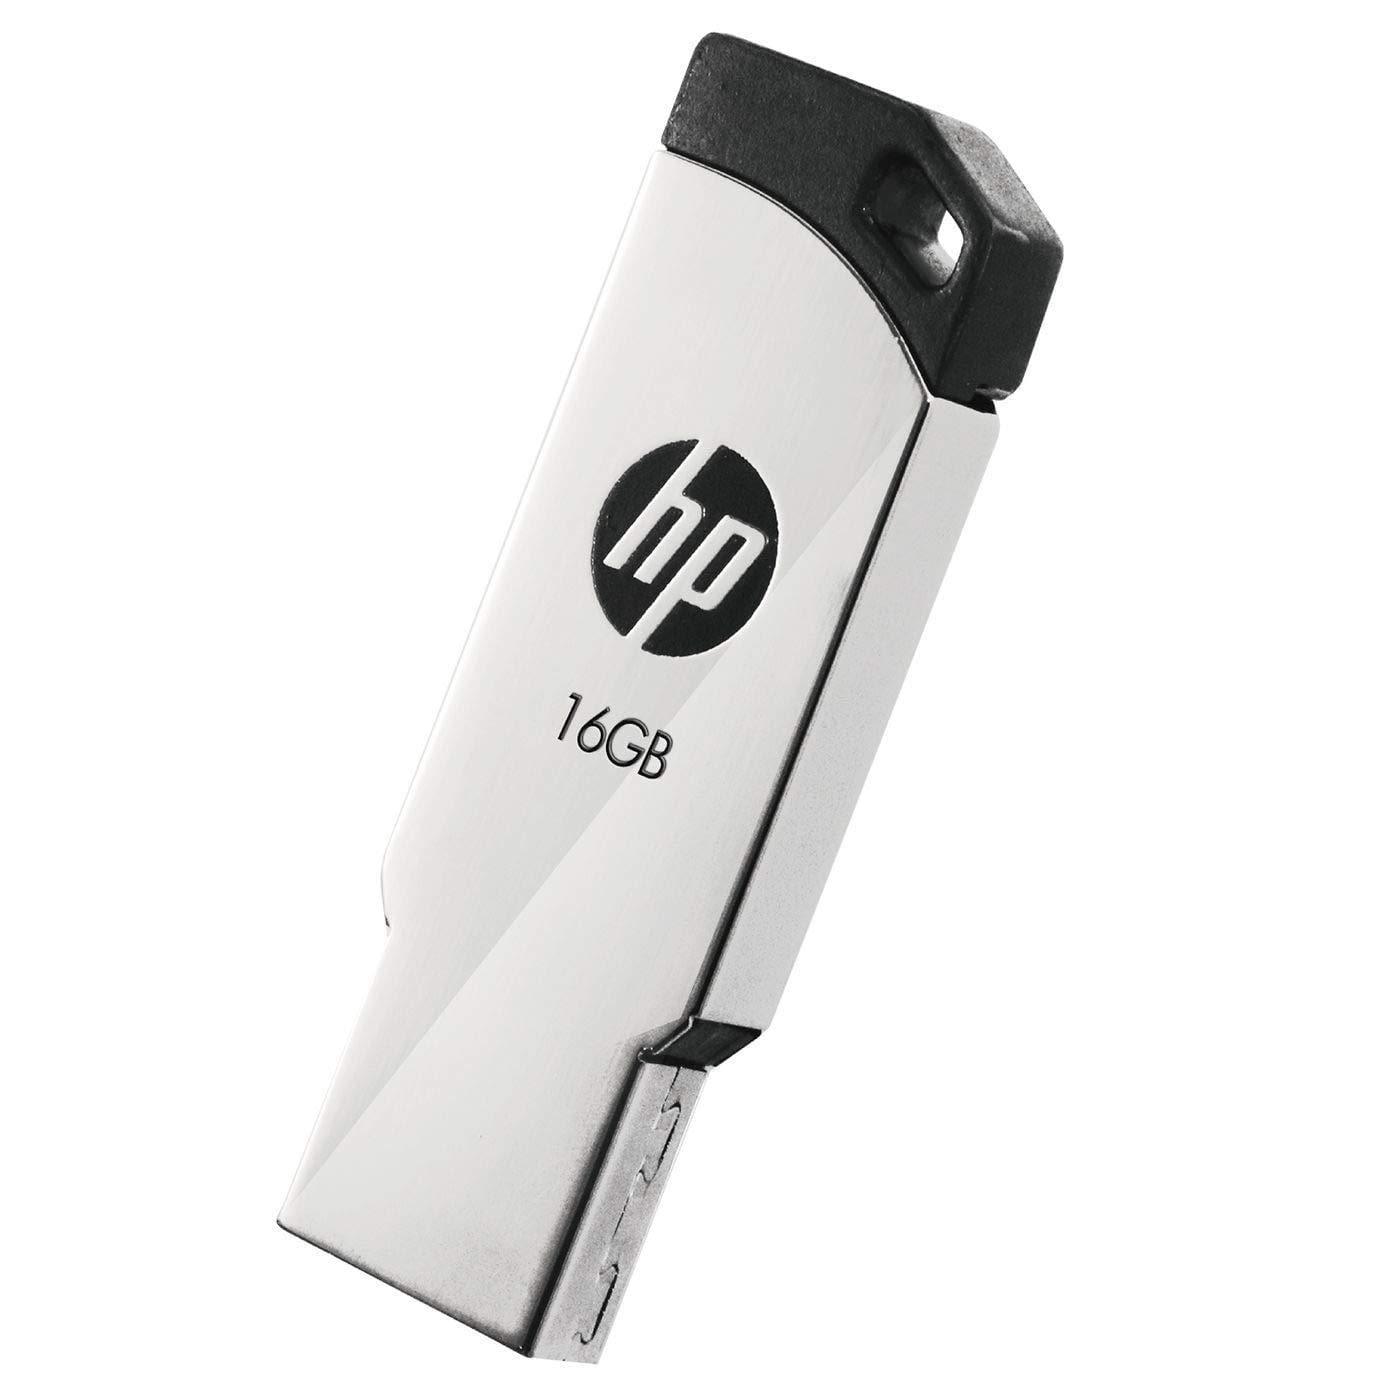 HP v236w USB 2.0 Pen Drive-pendrives-dealsplant